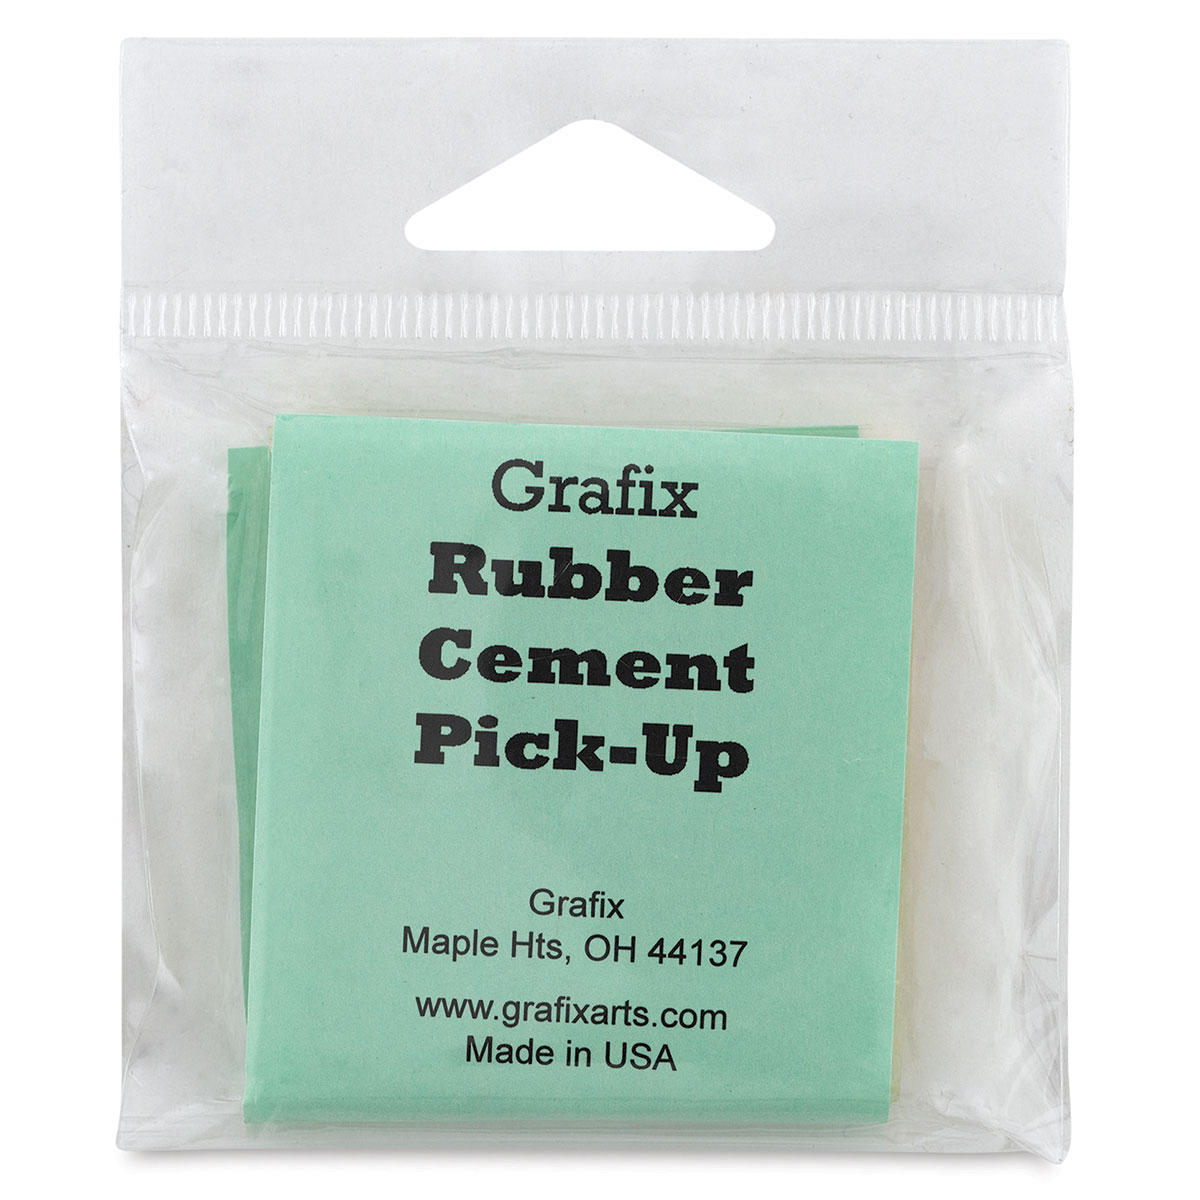 Grafix Rubber Cement Pick-Up